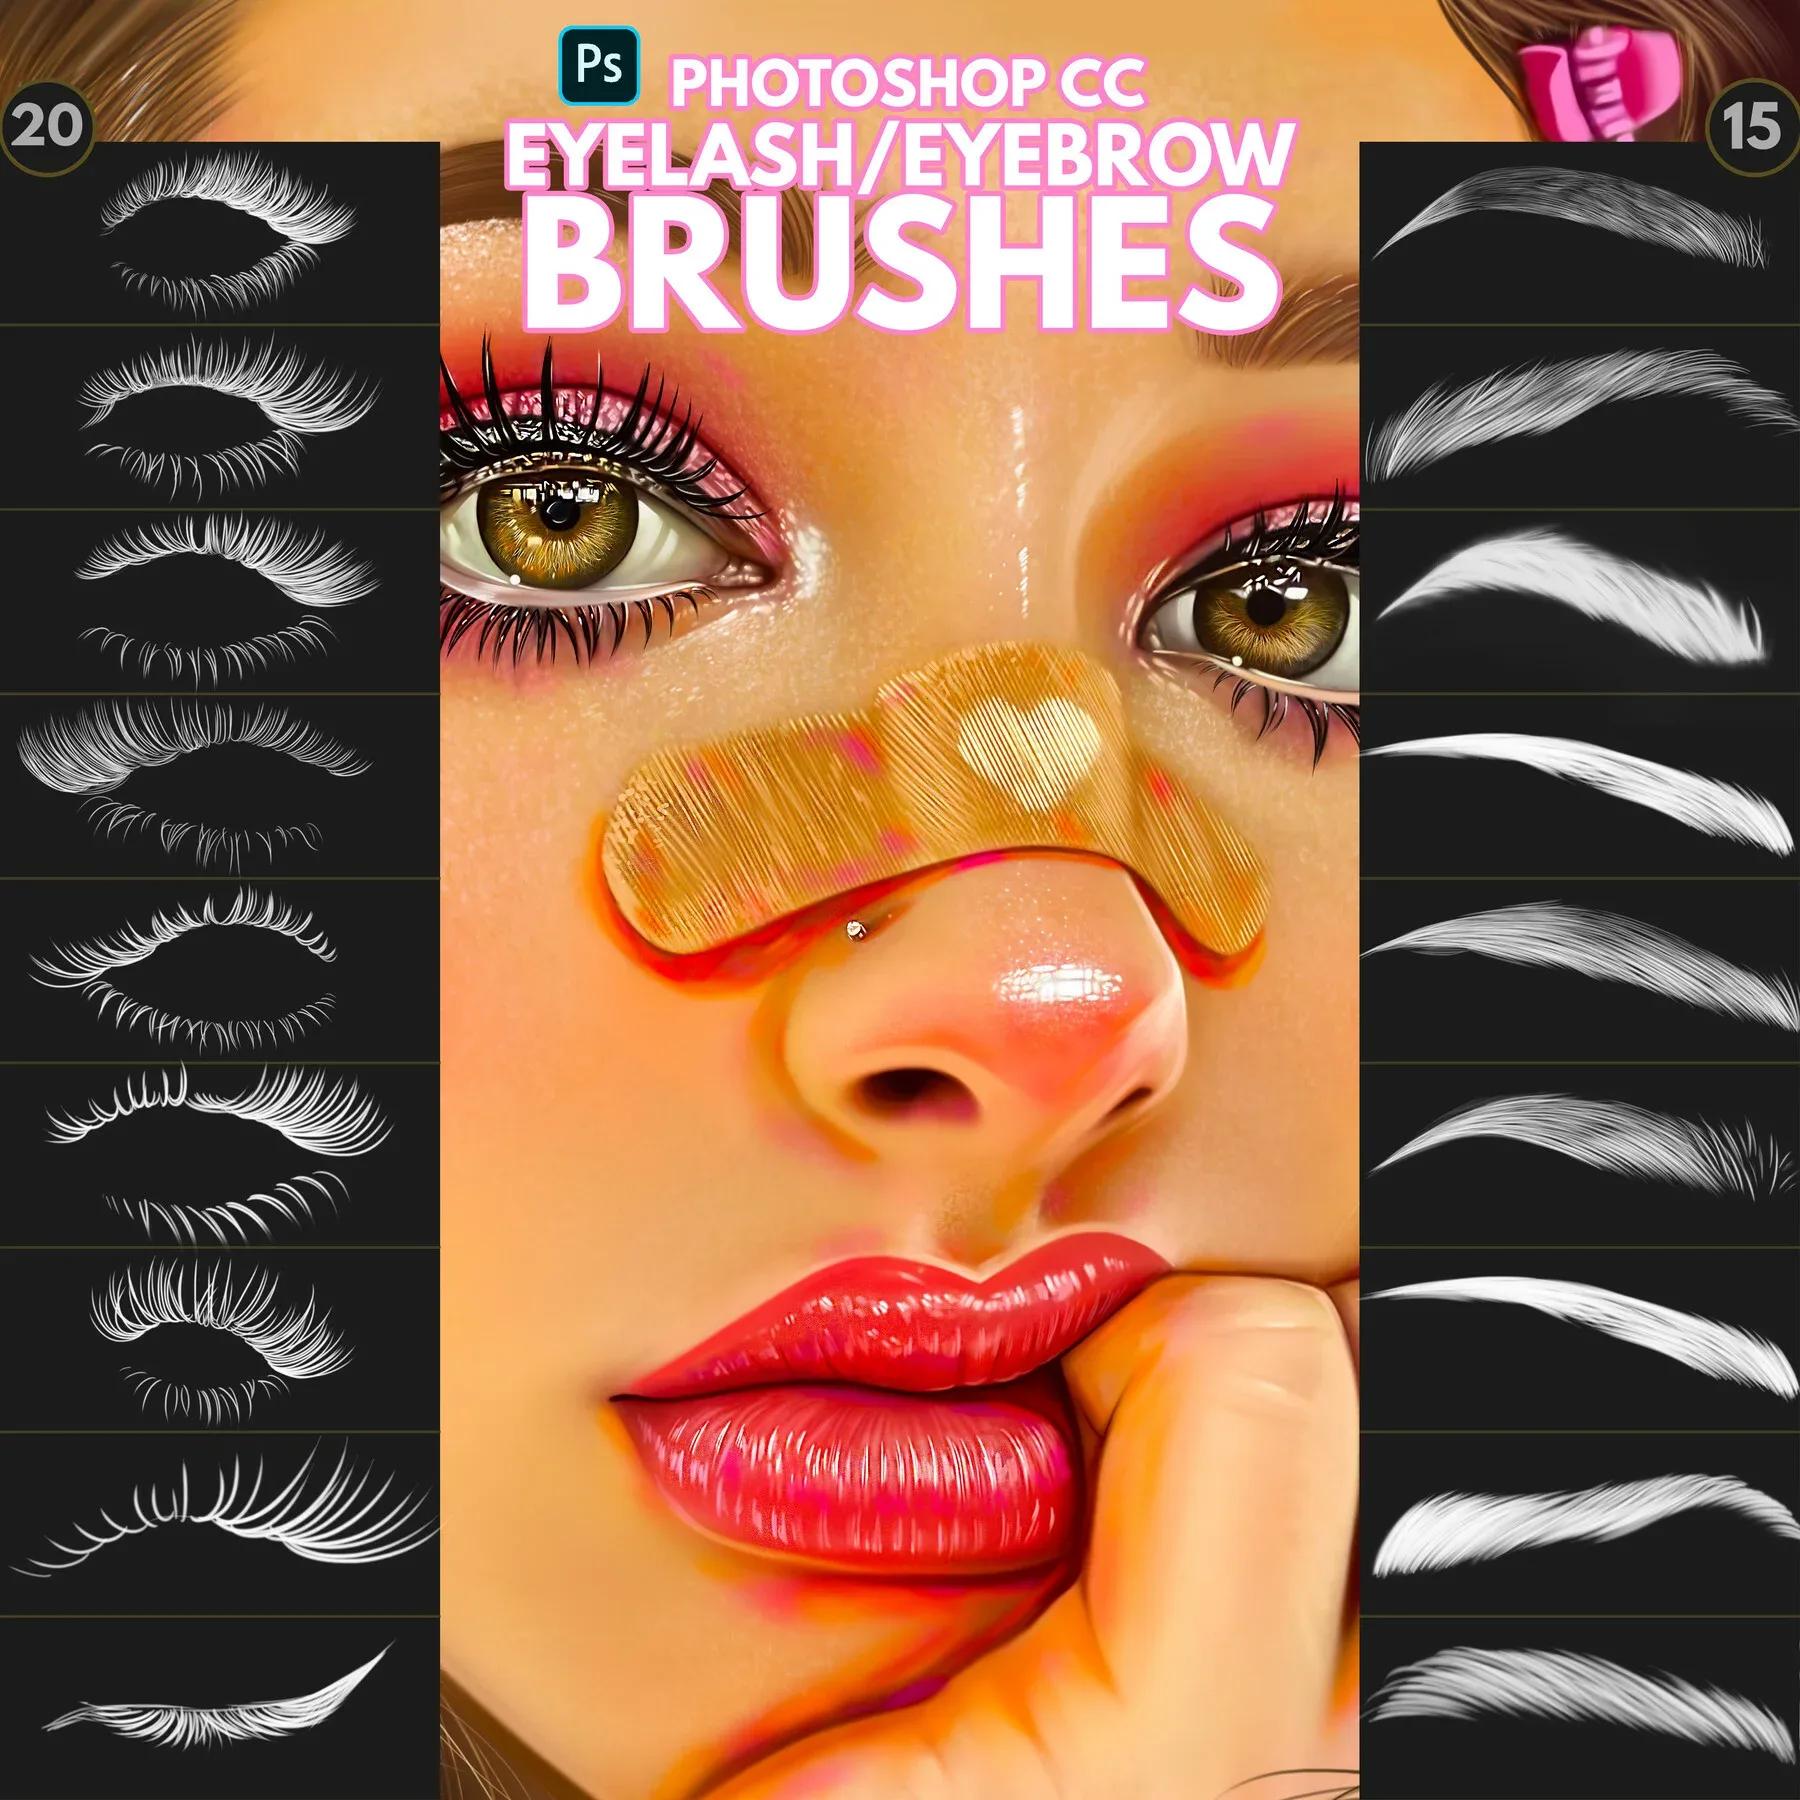 Eyelash/Eyebrow Brushes for Photoshop